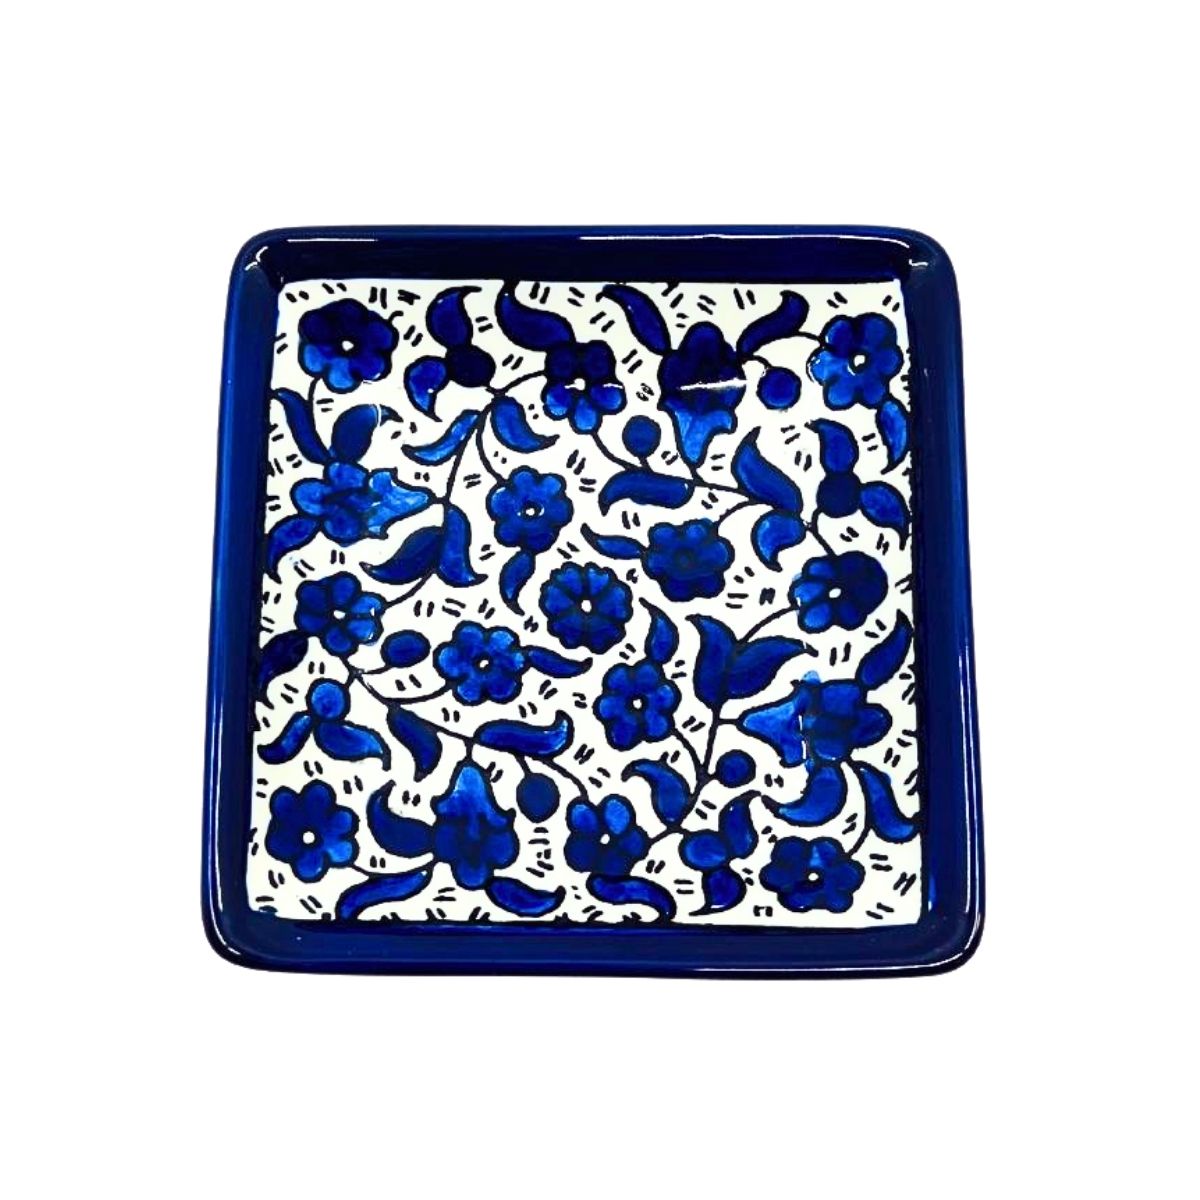 Ceramic Square Dish (4”) - Classic Blue